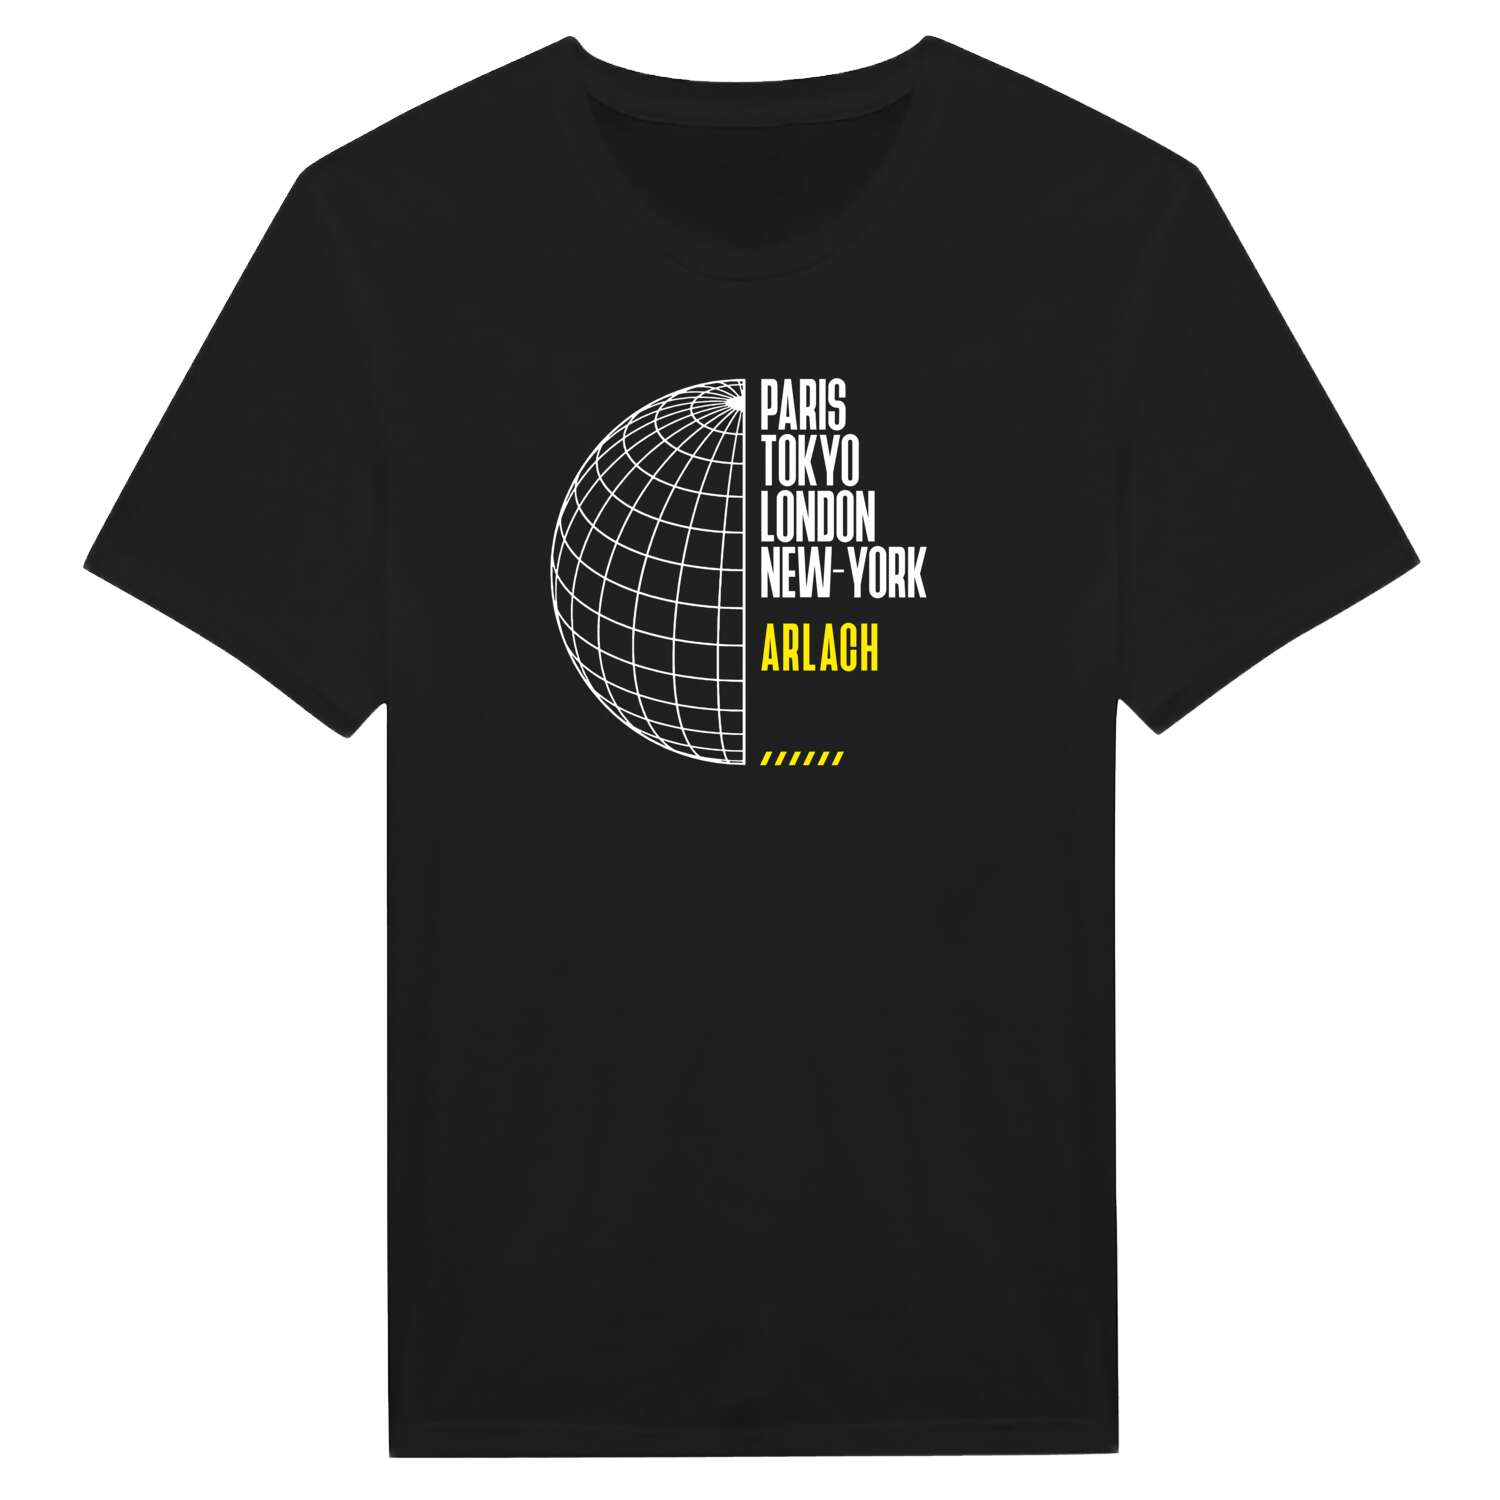 Arlach T-Shirt »Paris Tokyo London«